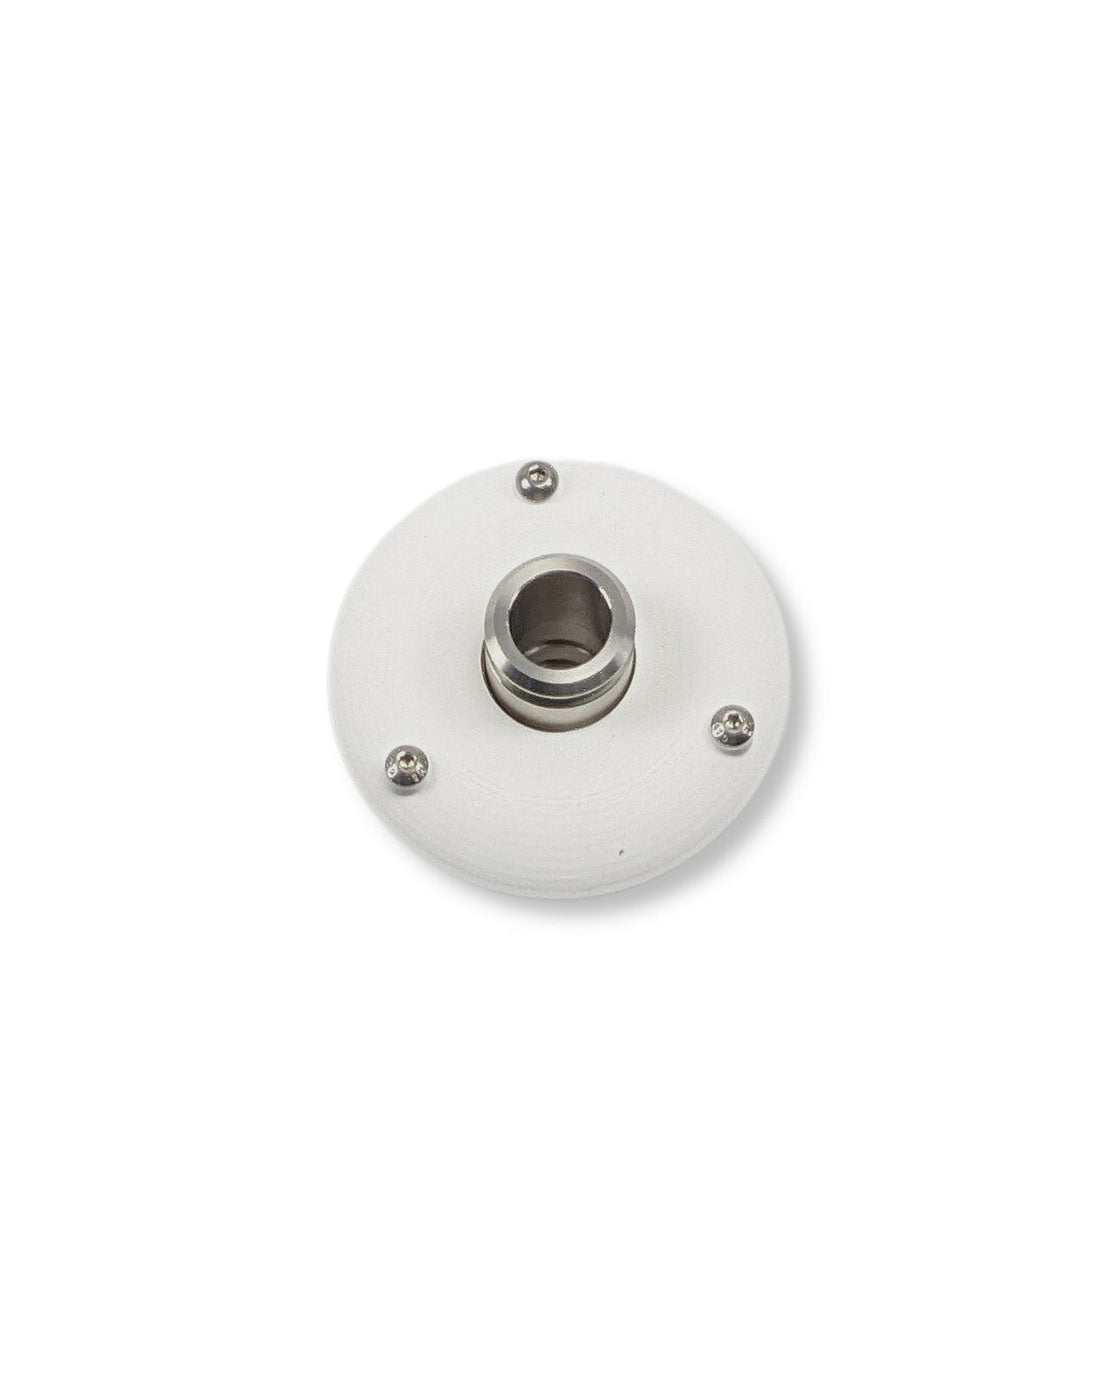 Ein weißer runder Knopf auf einer weißen Oberfläche mit den Schlüsselwörtern PURION IBC Universal 36W OTC SPL BS und UV Concept GmbH.